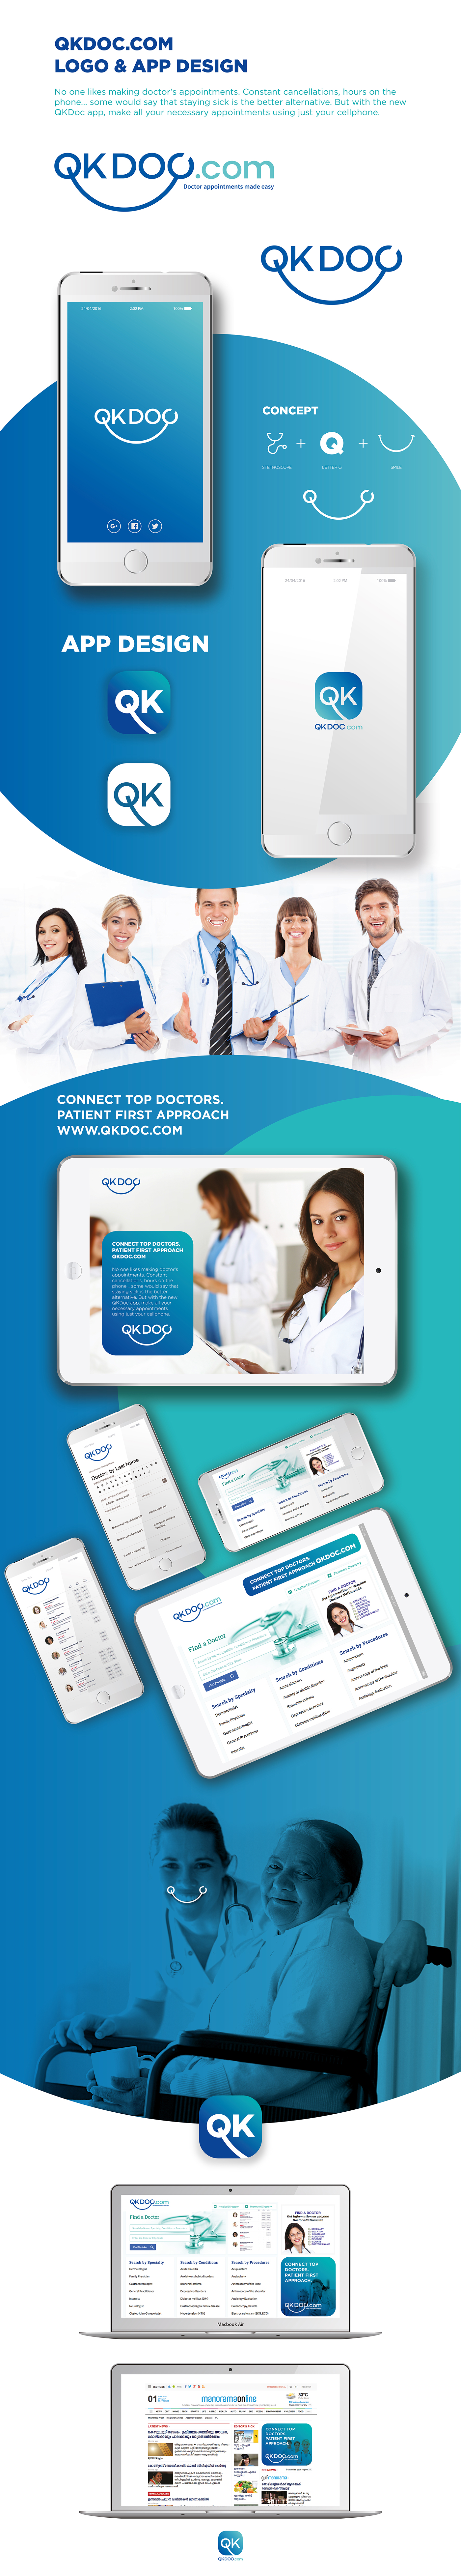 www.qkdoc.com medical Kochi logo HTML online doctor app Doctors App doctors app logo Google Play itunes